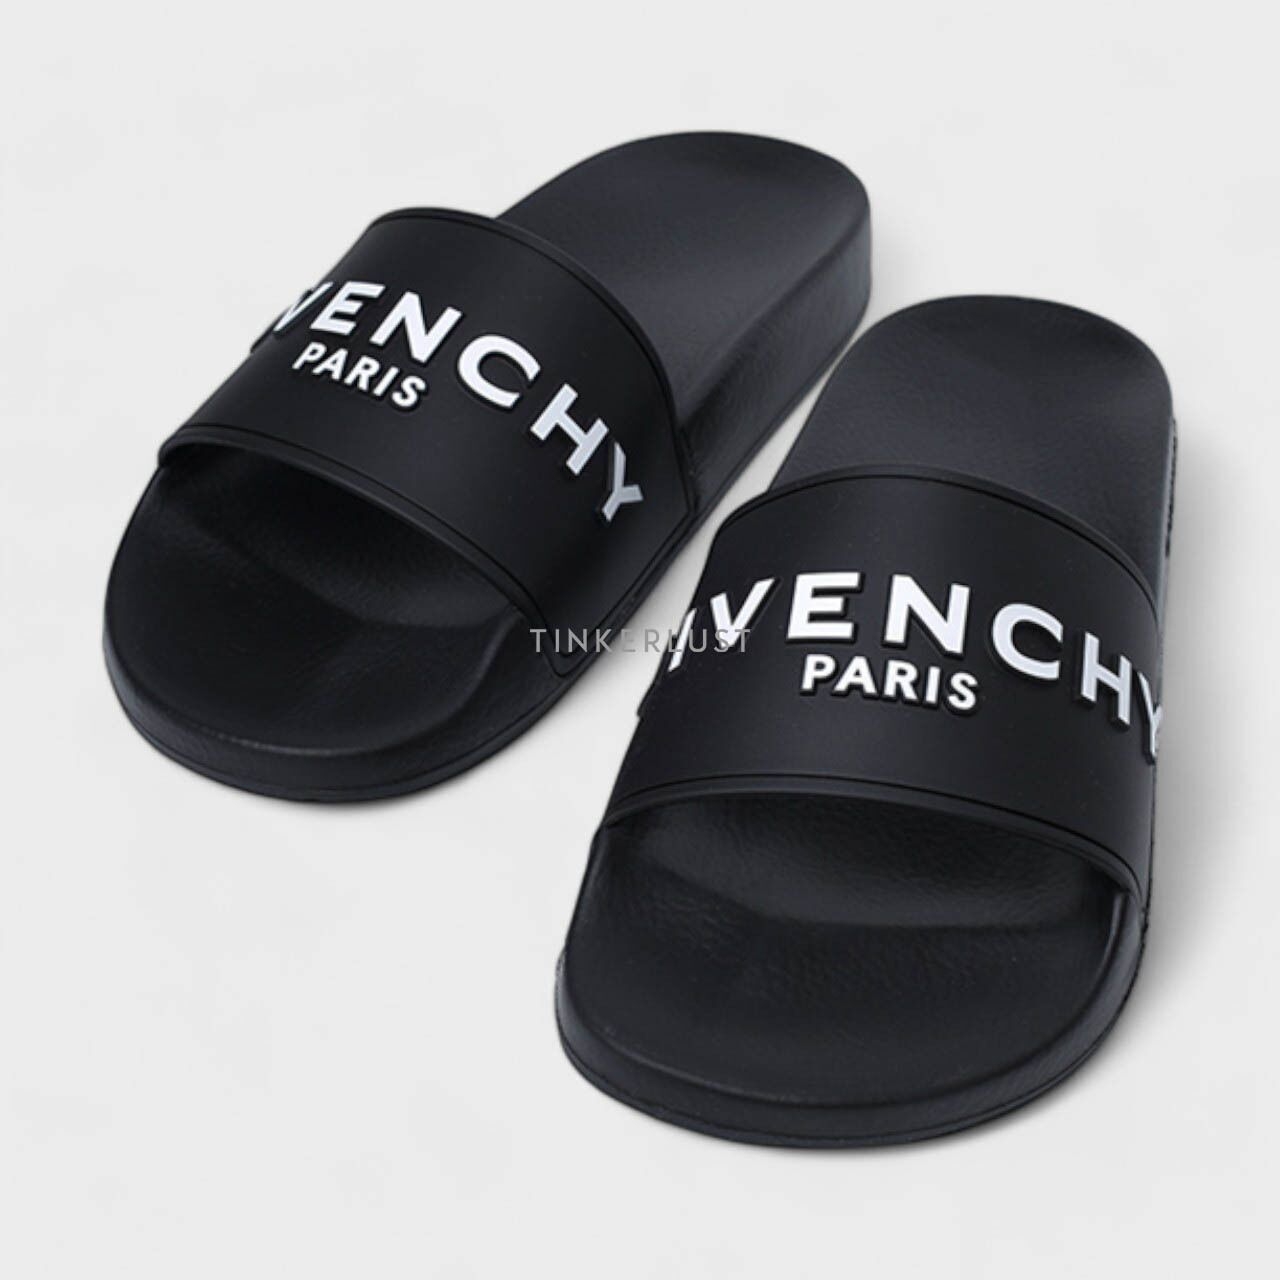 Givenchy Women Logo Slides in Black Sandals